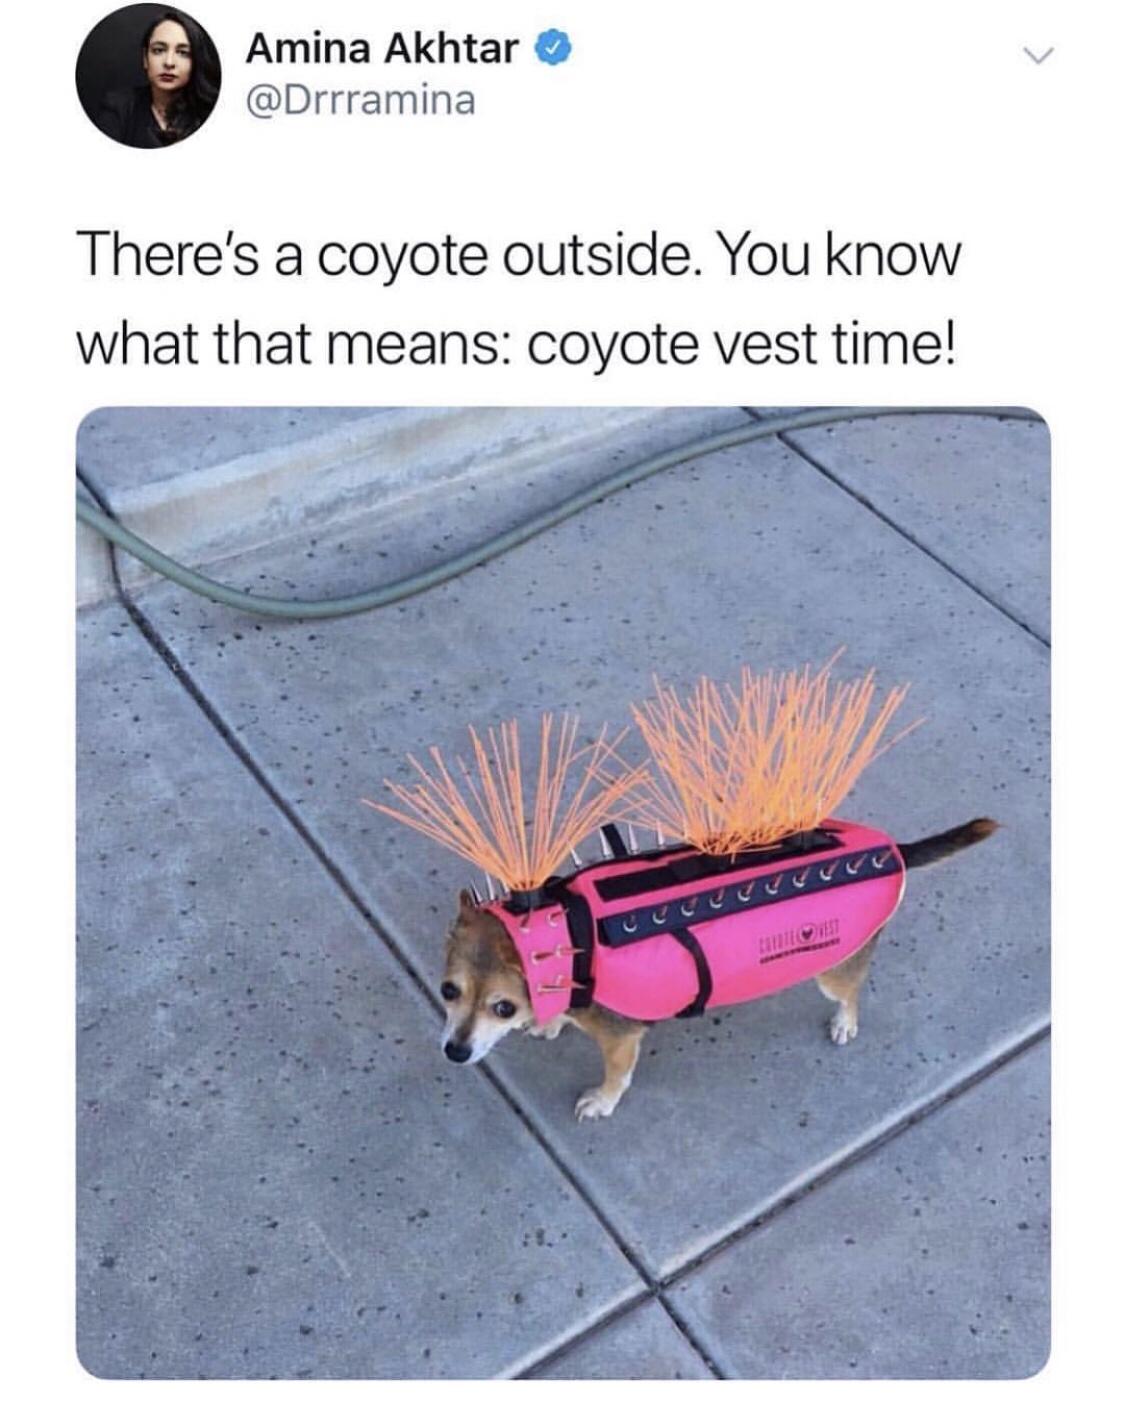 coyote+vest